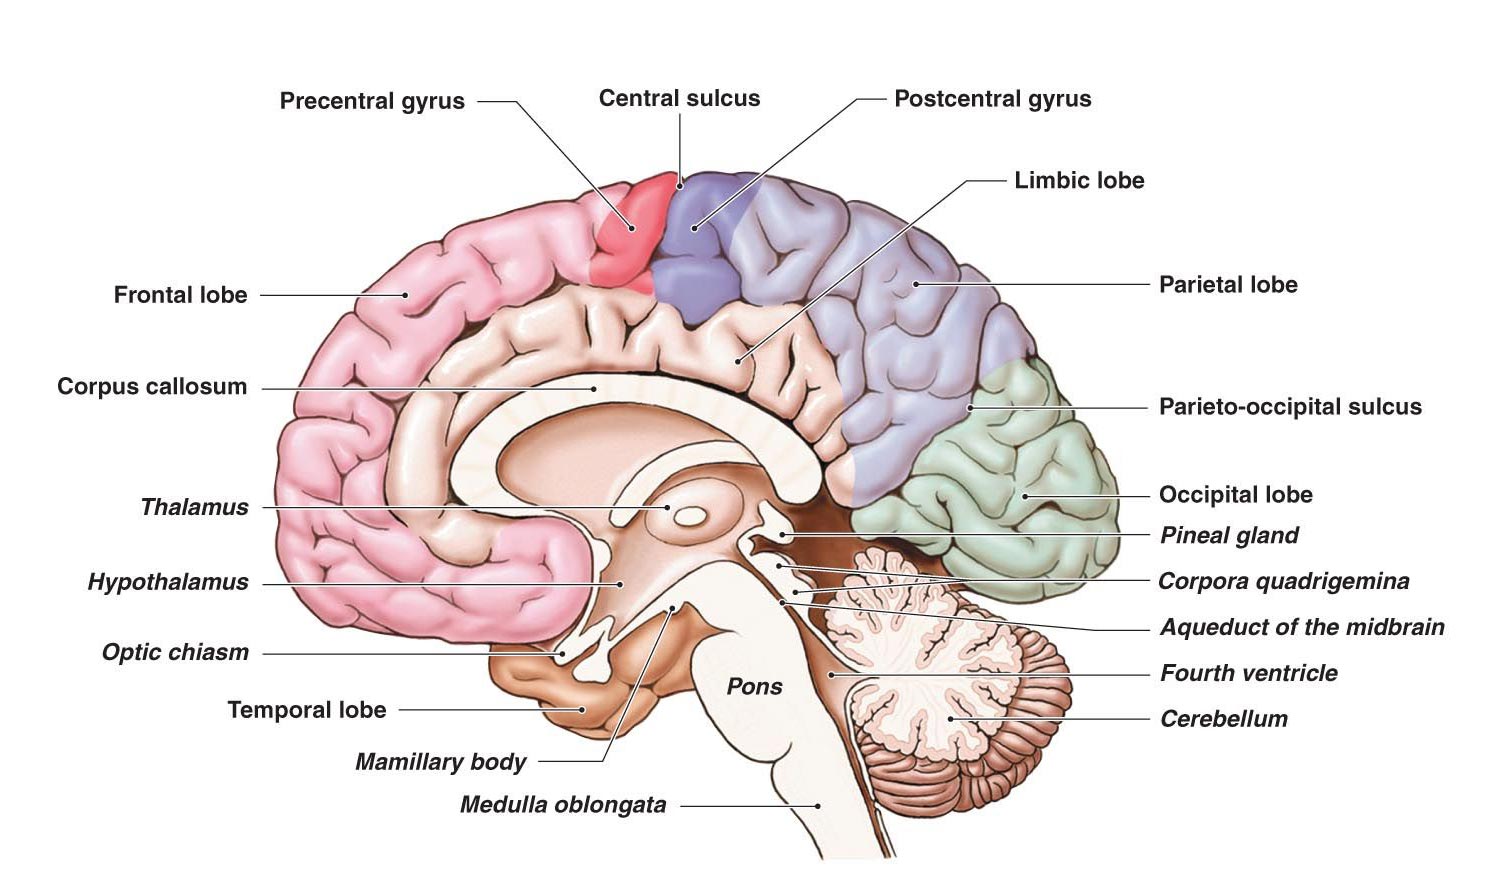 Human structure. Cingulate sulcus. Головной мозг. Структуры головного мозга. Анатомия головного мозга человека.